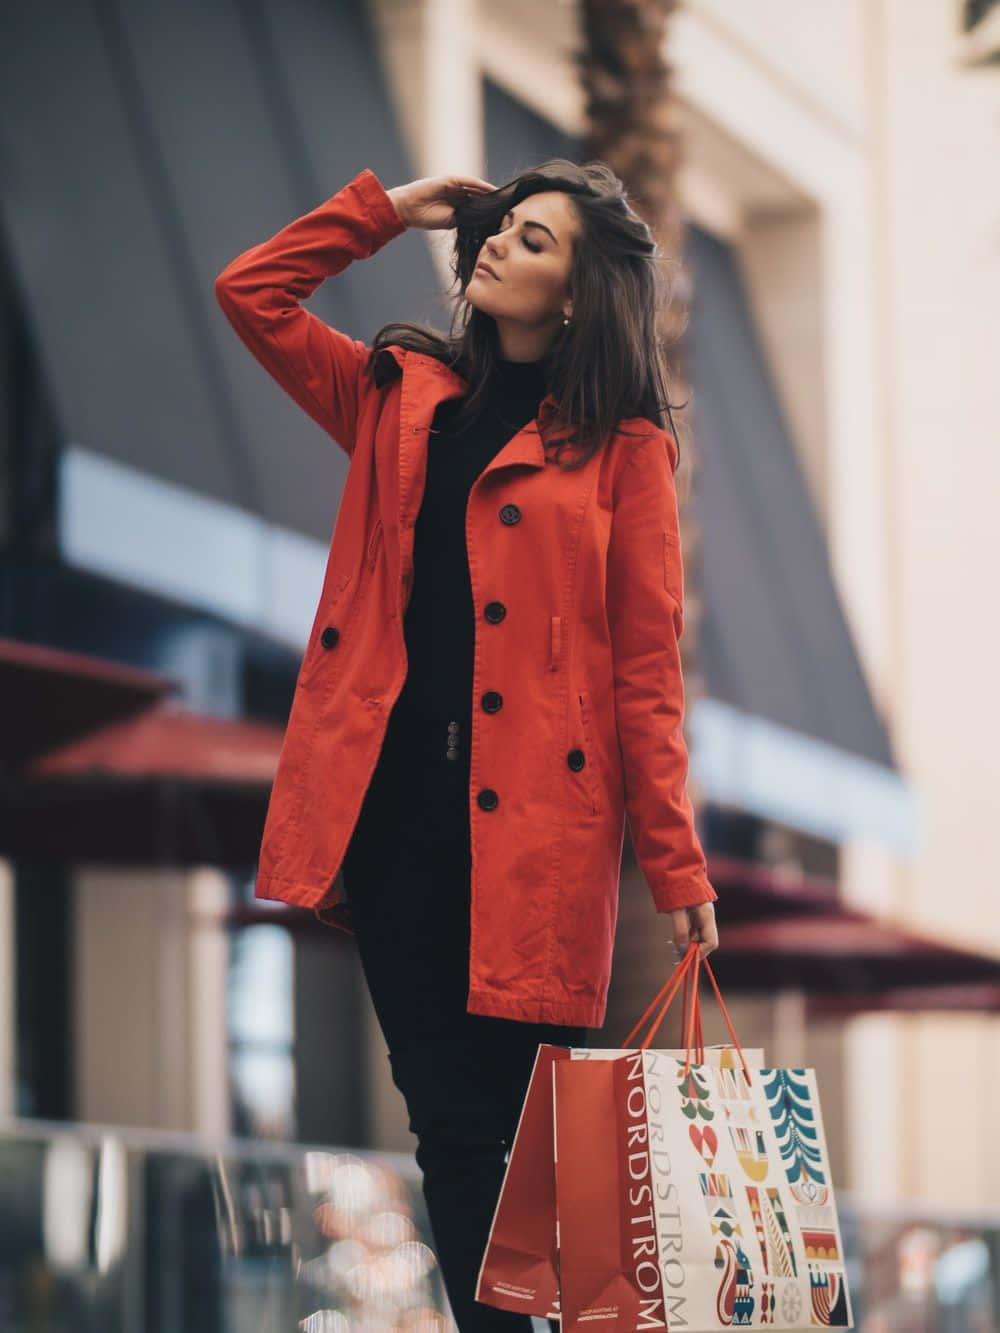 Einefrau In Einem Roten Mantel, Die Einkaufstaschen Hält.